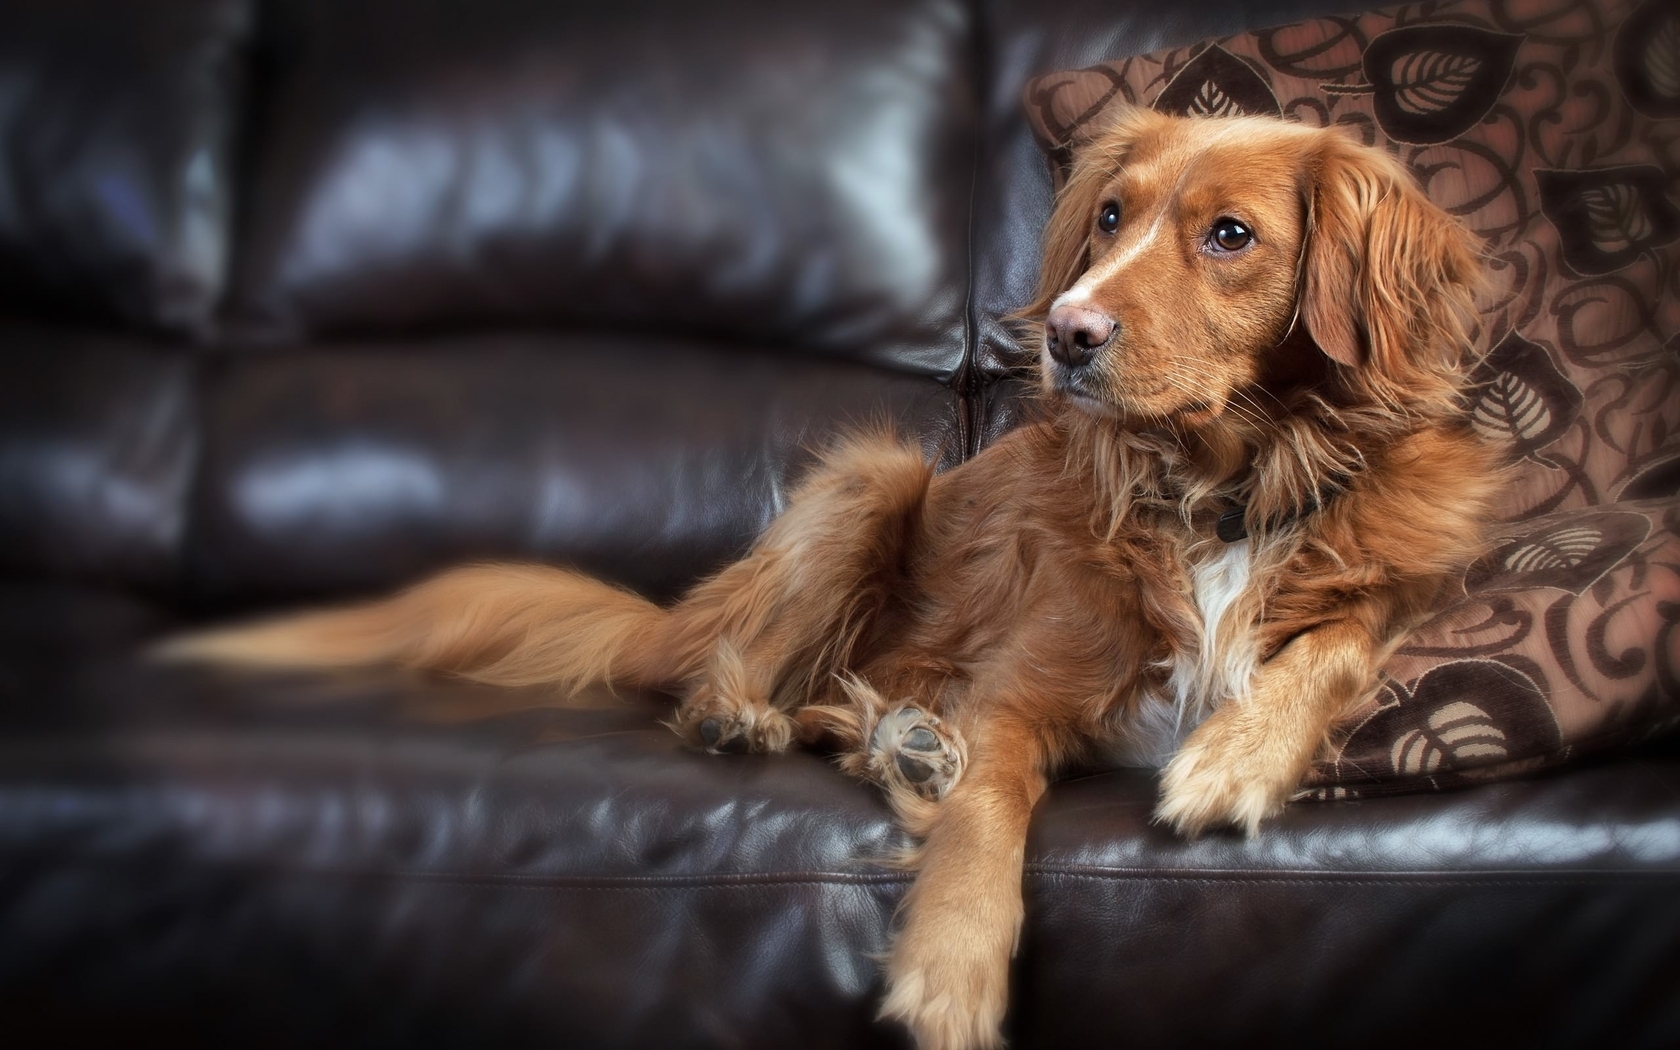 Картинка: Собака, морда, глаза, взгляд, шерсть, лапы, лежит, диван, подушка